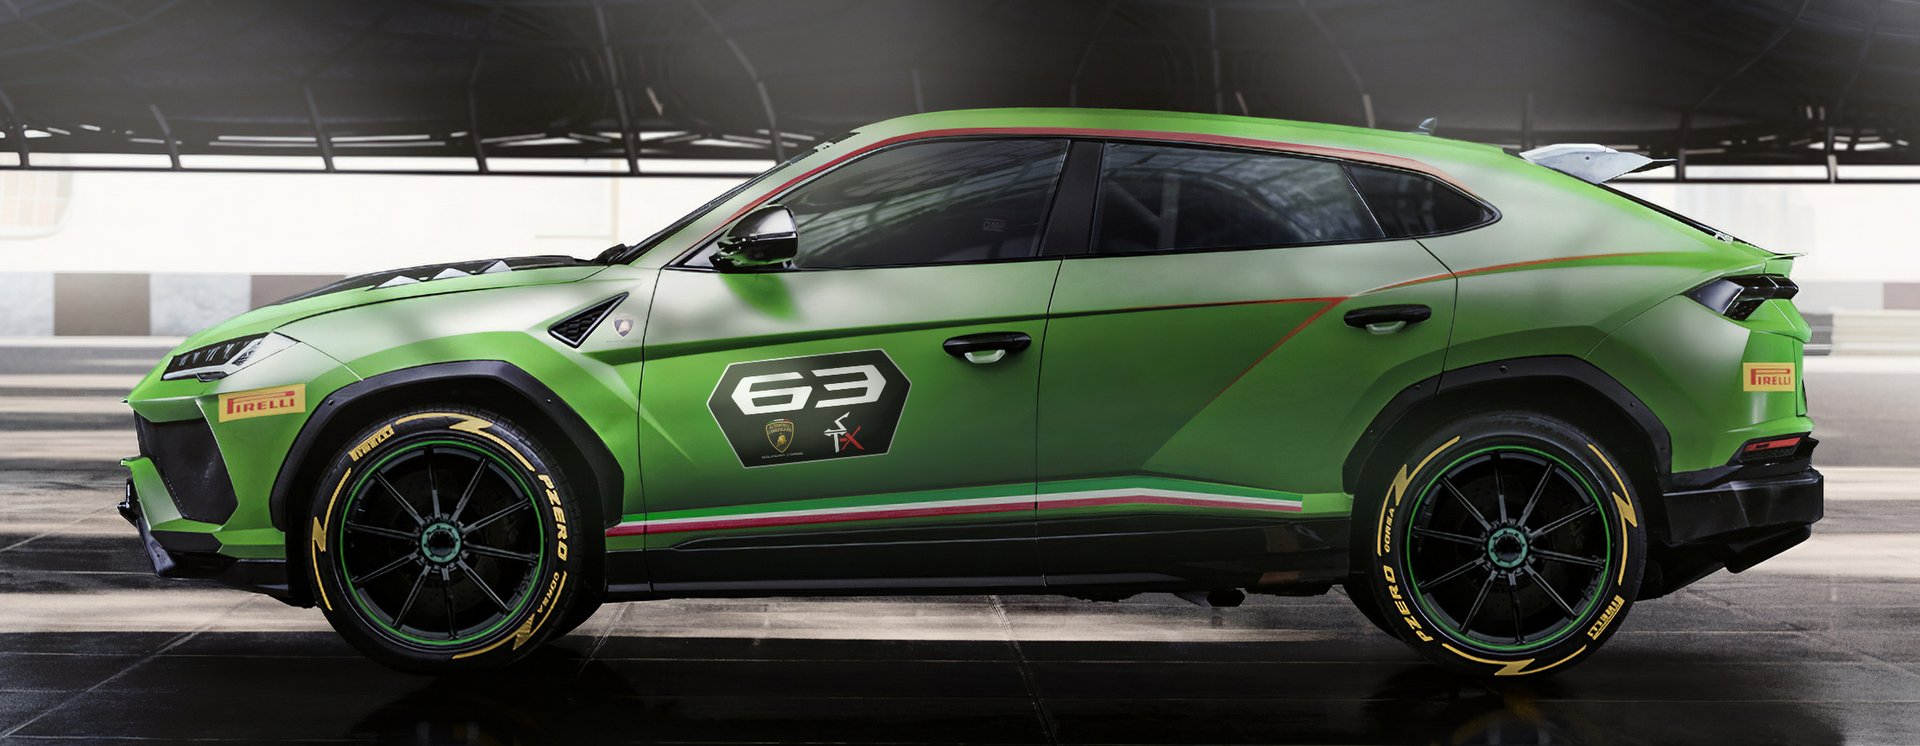 Szabadidőjármű versenyszériát tervez a Lamborghini 4